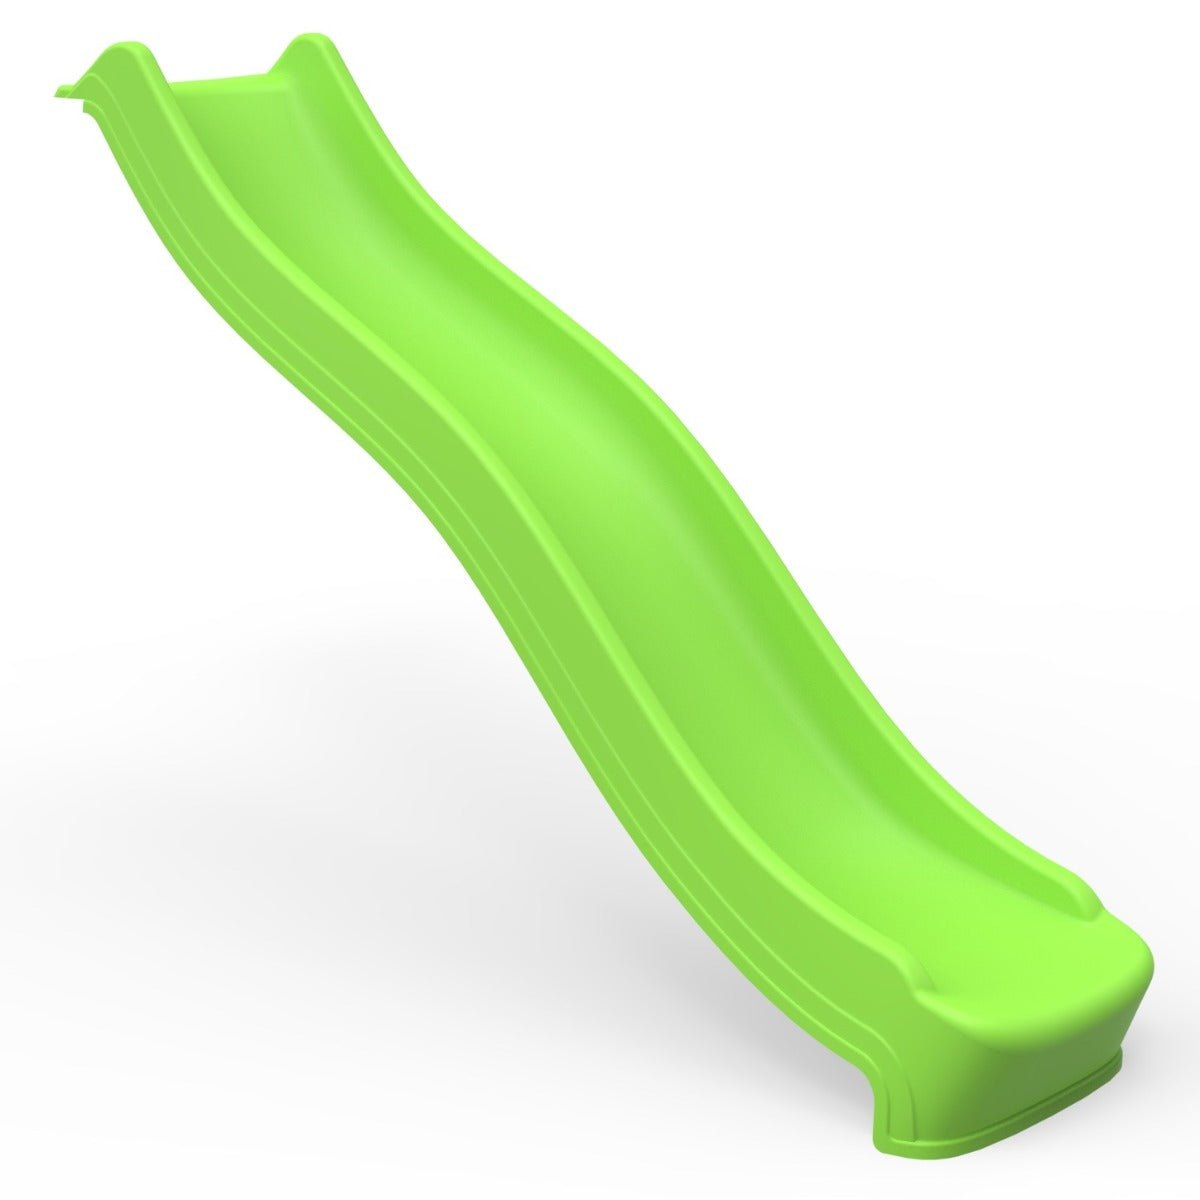 Rebo 8FT (220cm) Universal Children’s Plastic Garden Wave Slides - Light Green